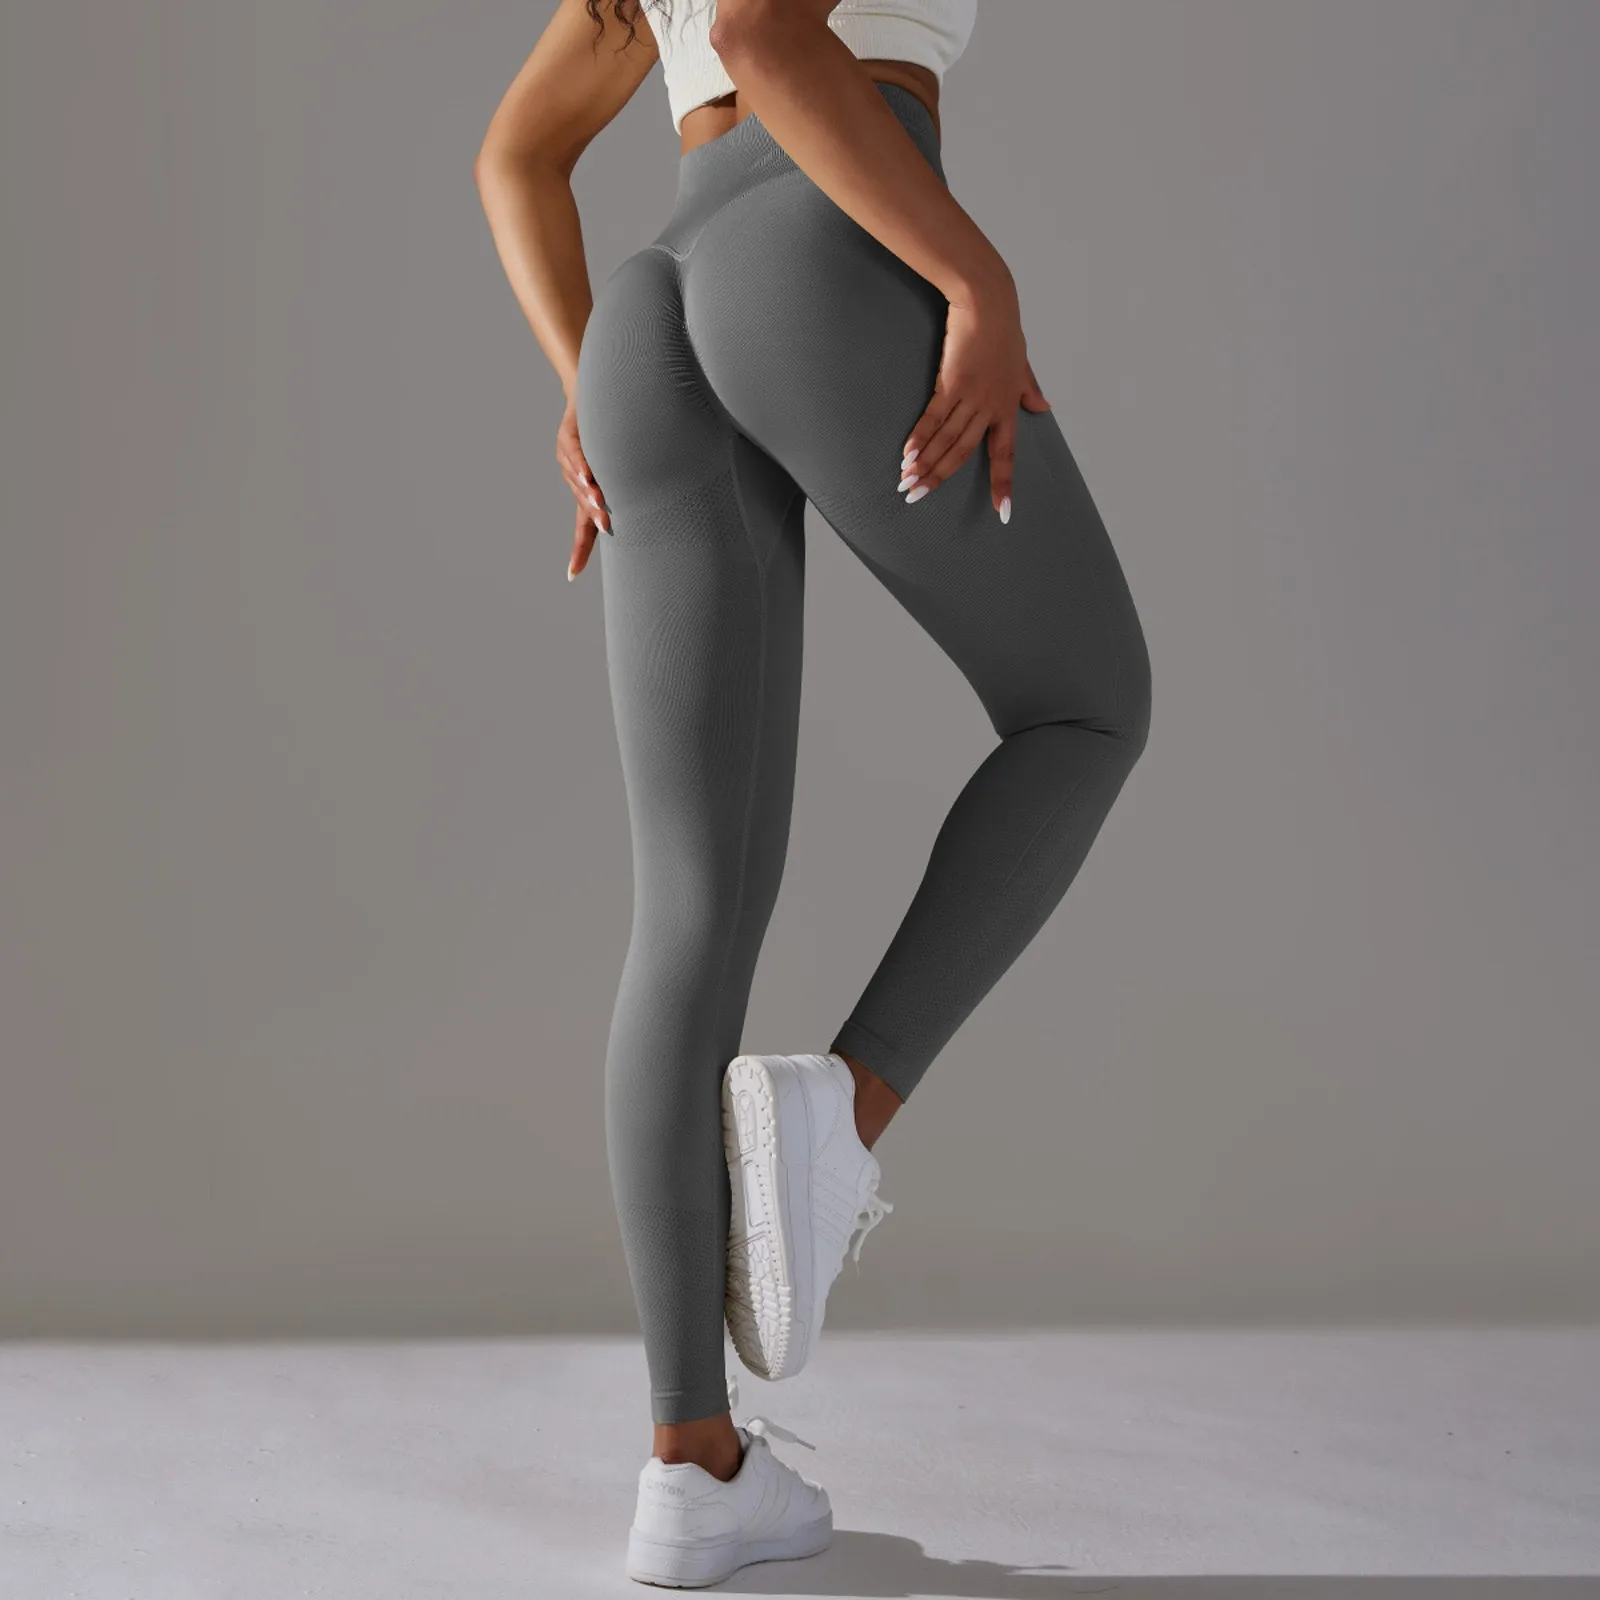 

Женские базовые штаны для йоги с широким поясом, однотонные расклешенные штаны для женщин, спортивные Леггинсы для фитнеса и активного отдыха